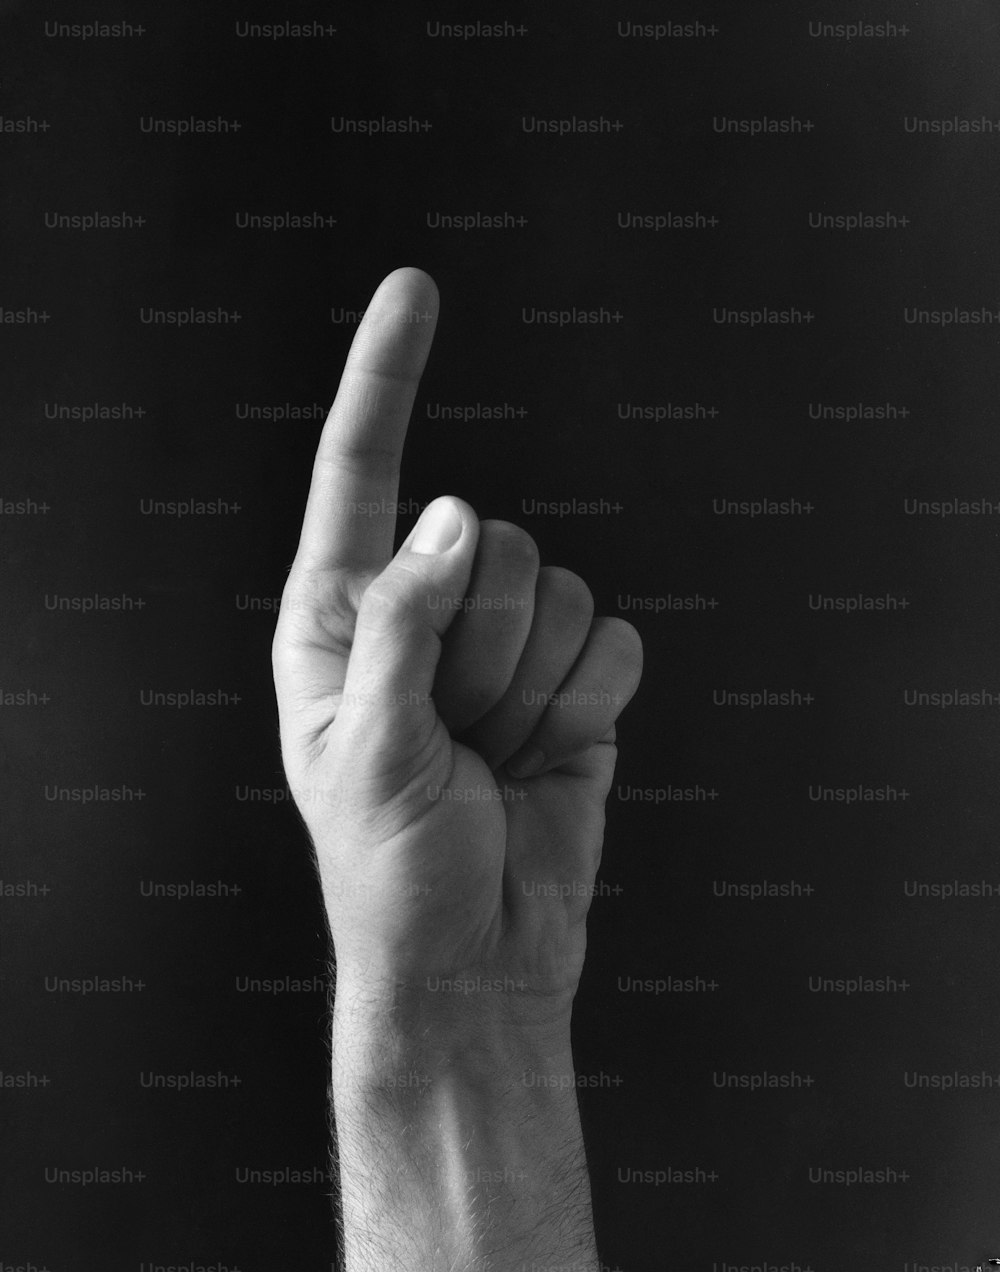 ESTADOS UNIDOS - CIRCA 1940s: La mano del hombre apuntando con el dedo índice a un lado.